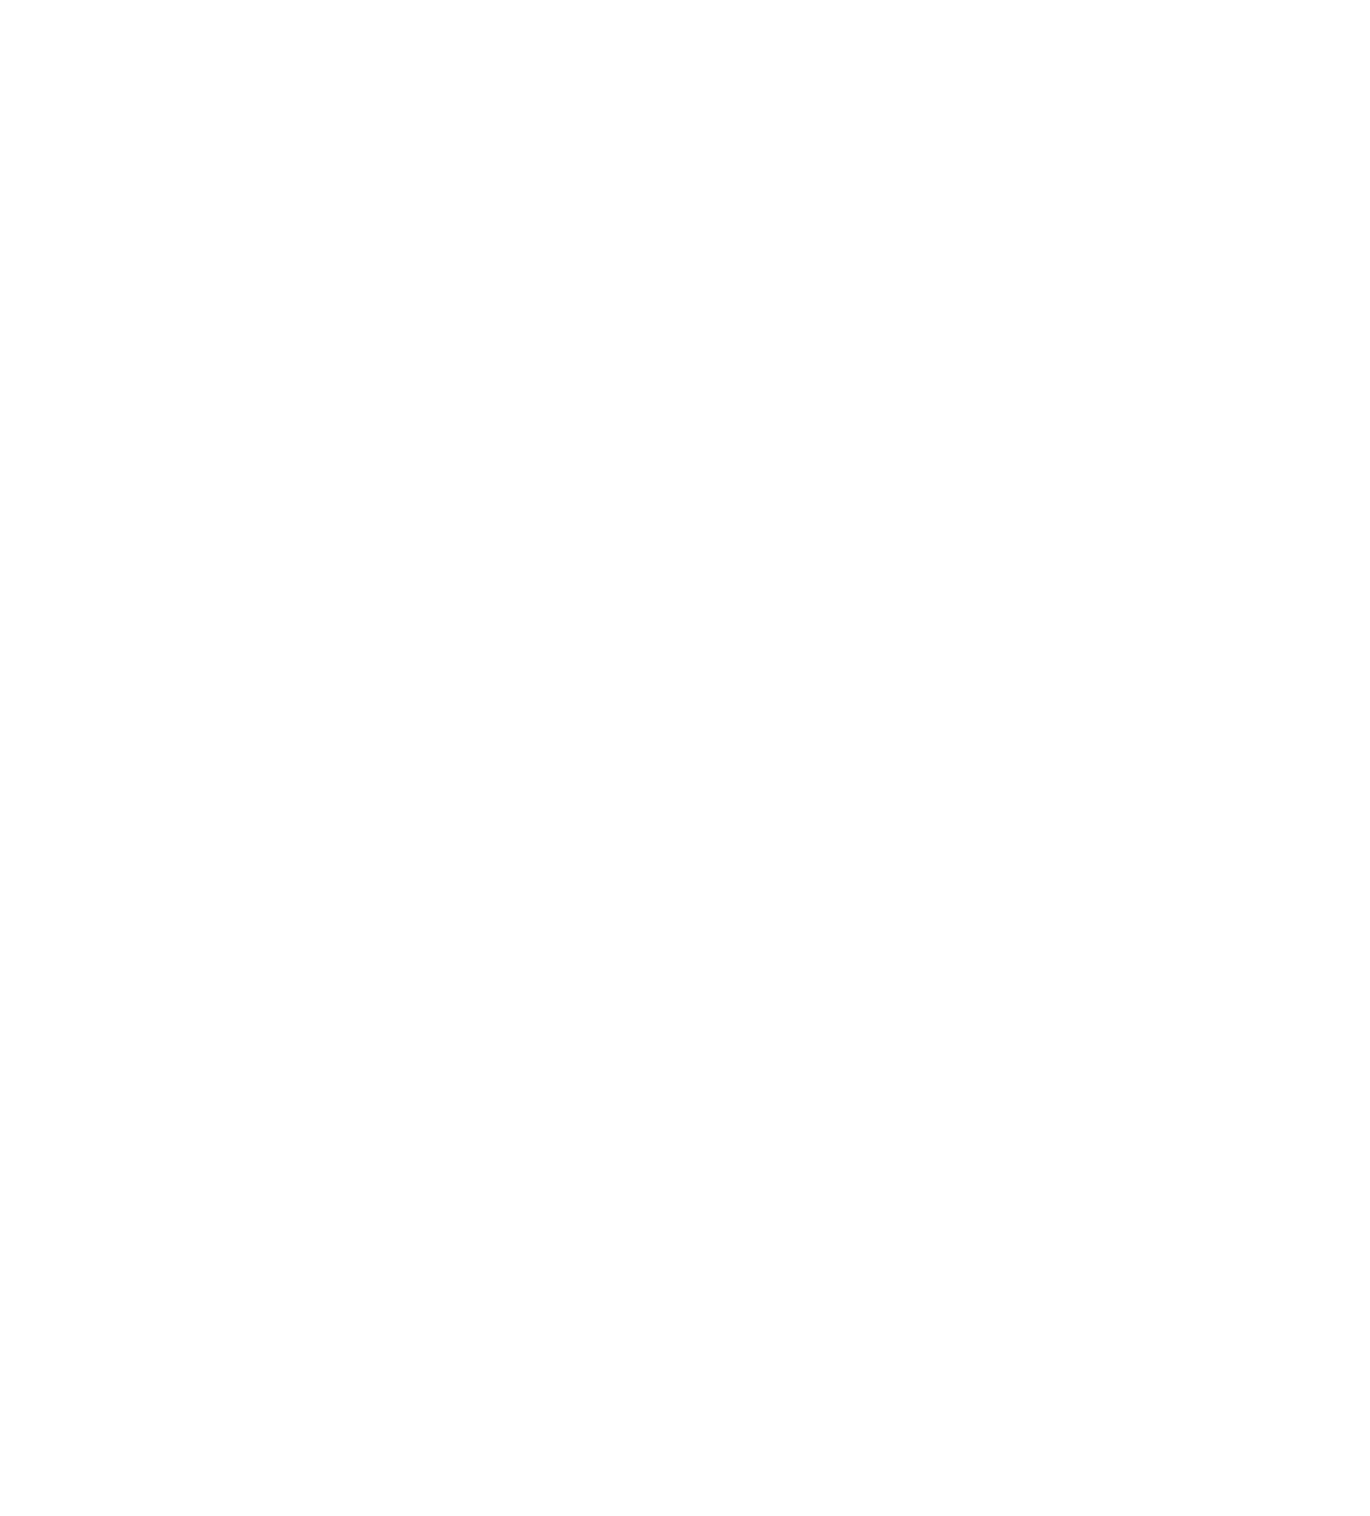 Safran logo for dark backgrounds (transparent PNG)